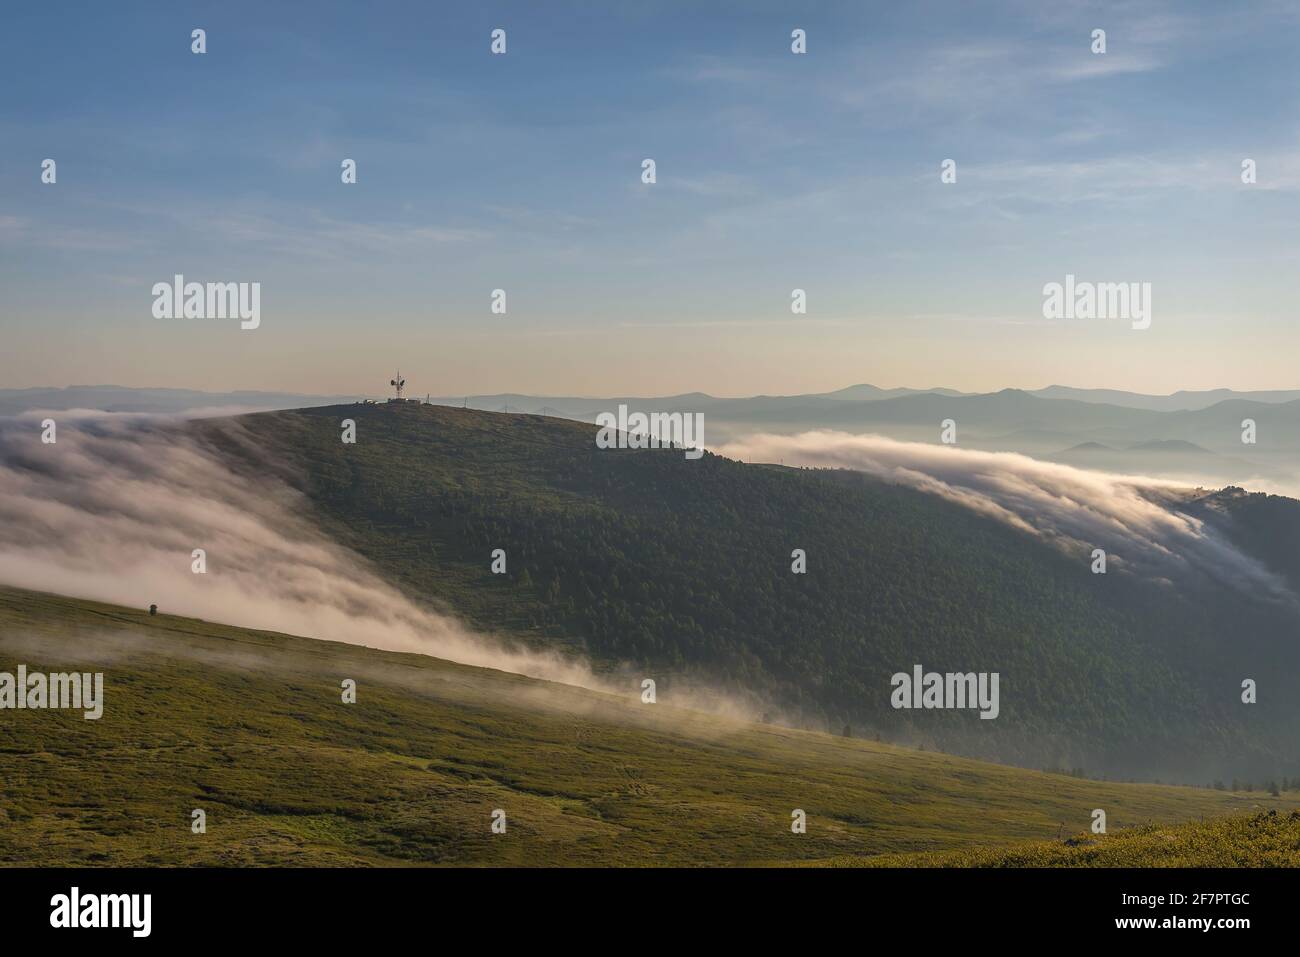 Increíble amanecer con una hermosa y suave niebla, torre de telecomunicaciones en la cima de la montaña y bosque de cedro con el telón de fondo de cielo azul y cl Foto de stock